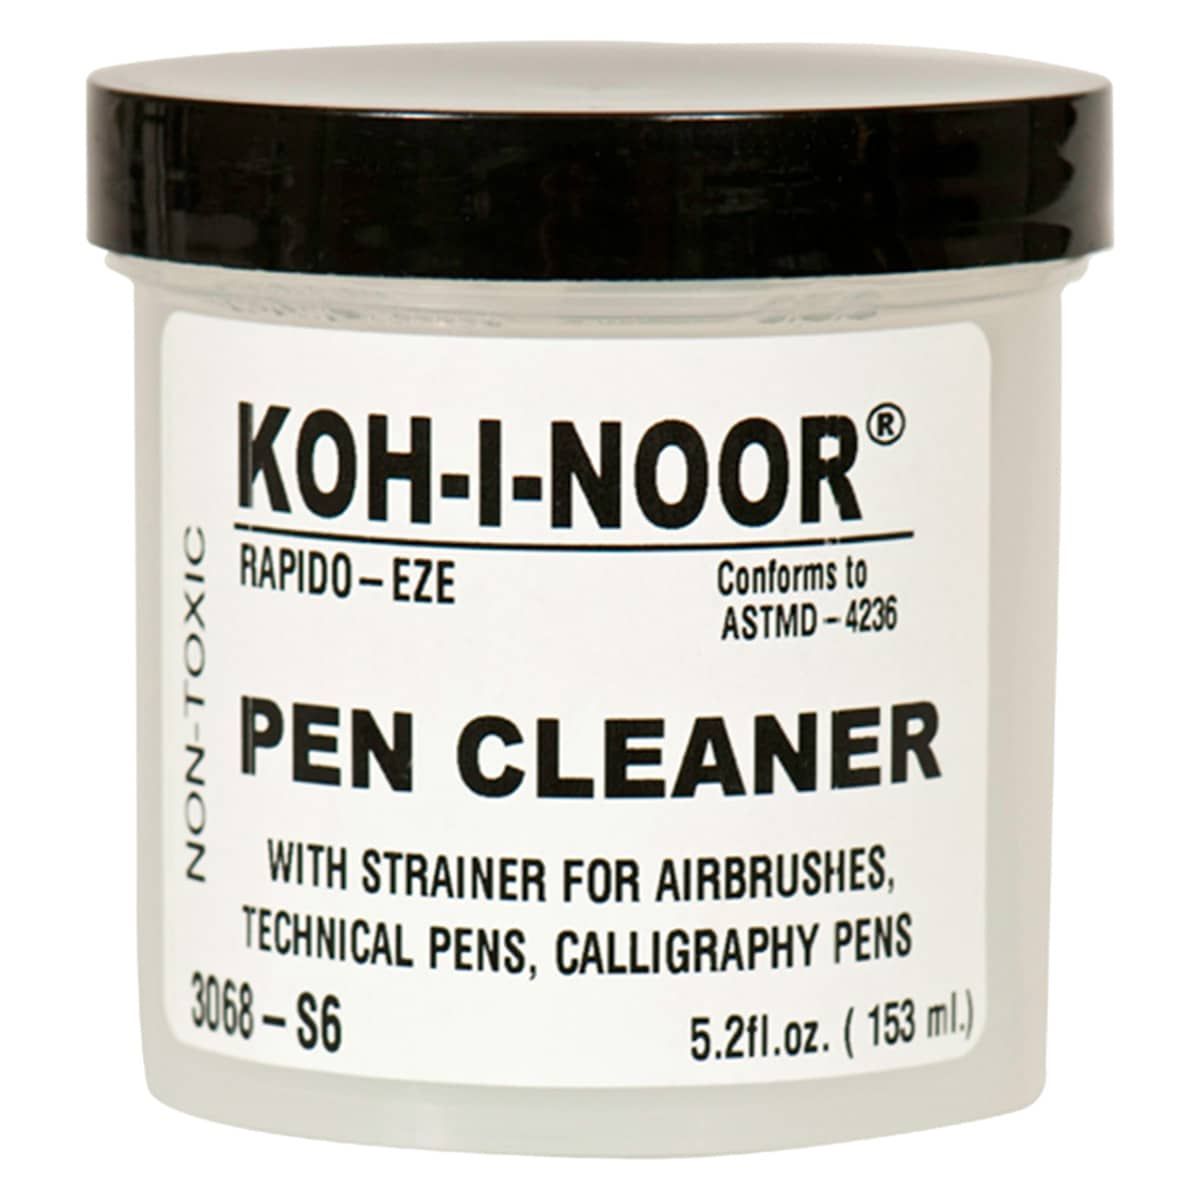 Koh-I-Noor Rapido-Eze Pen Cleaner w/ Strainer, 5.2oz